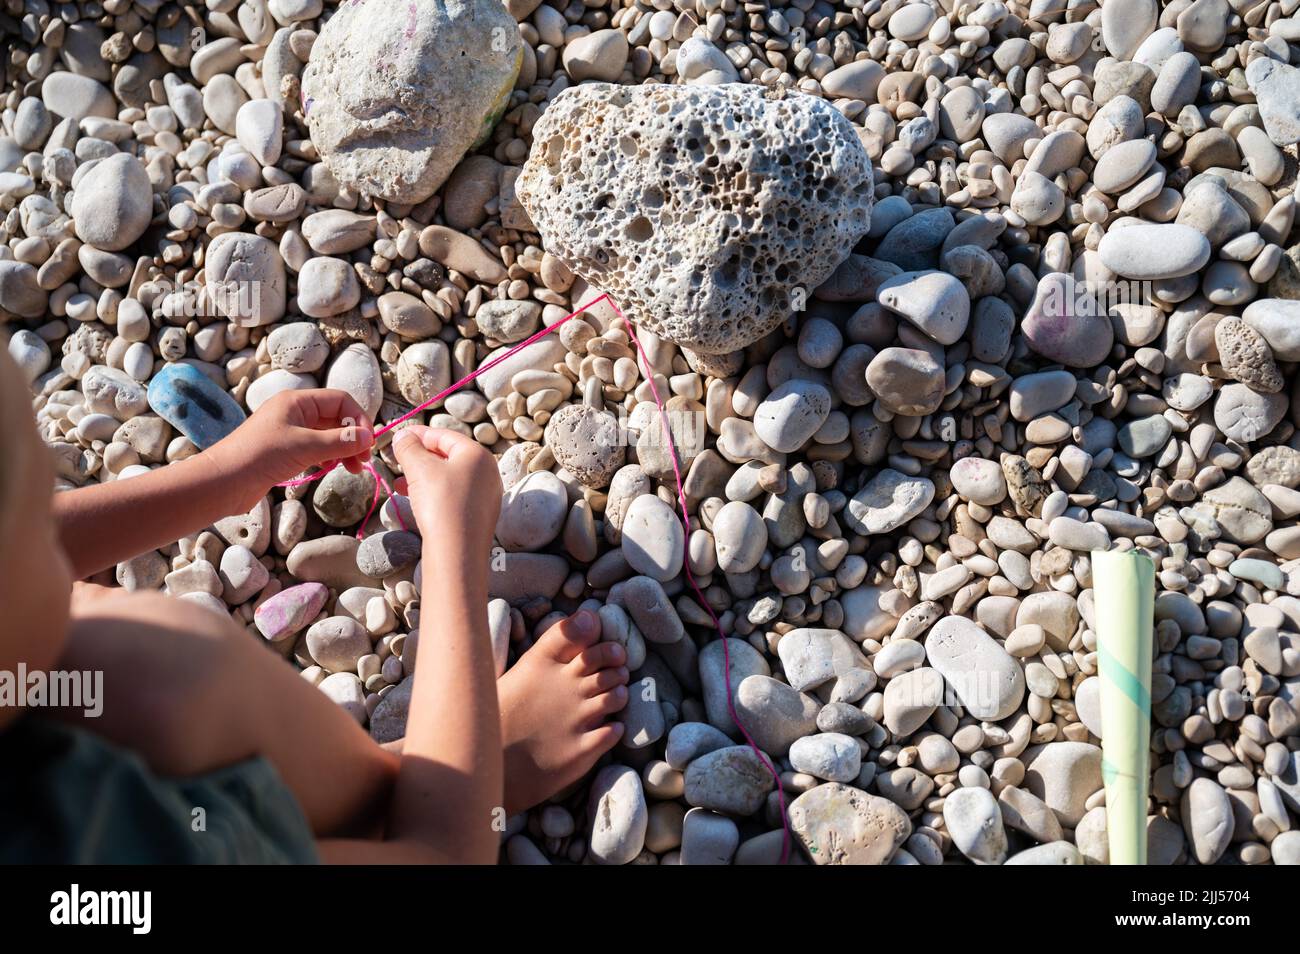 Vista superior de un niño que hace punto una pulsera de cuerda con hilo de algodón de colores en una playa de guijarros. Foto de stock